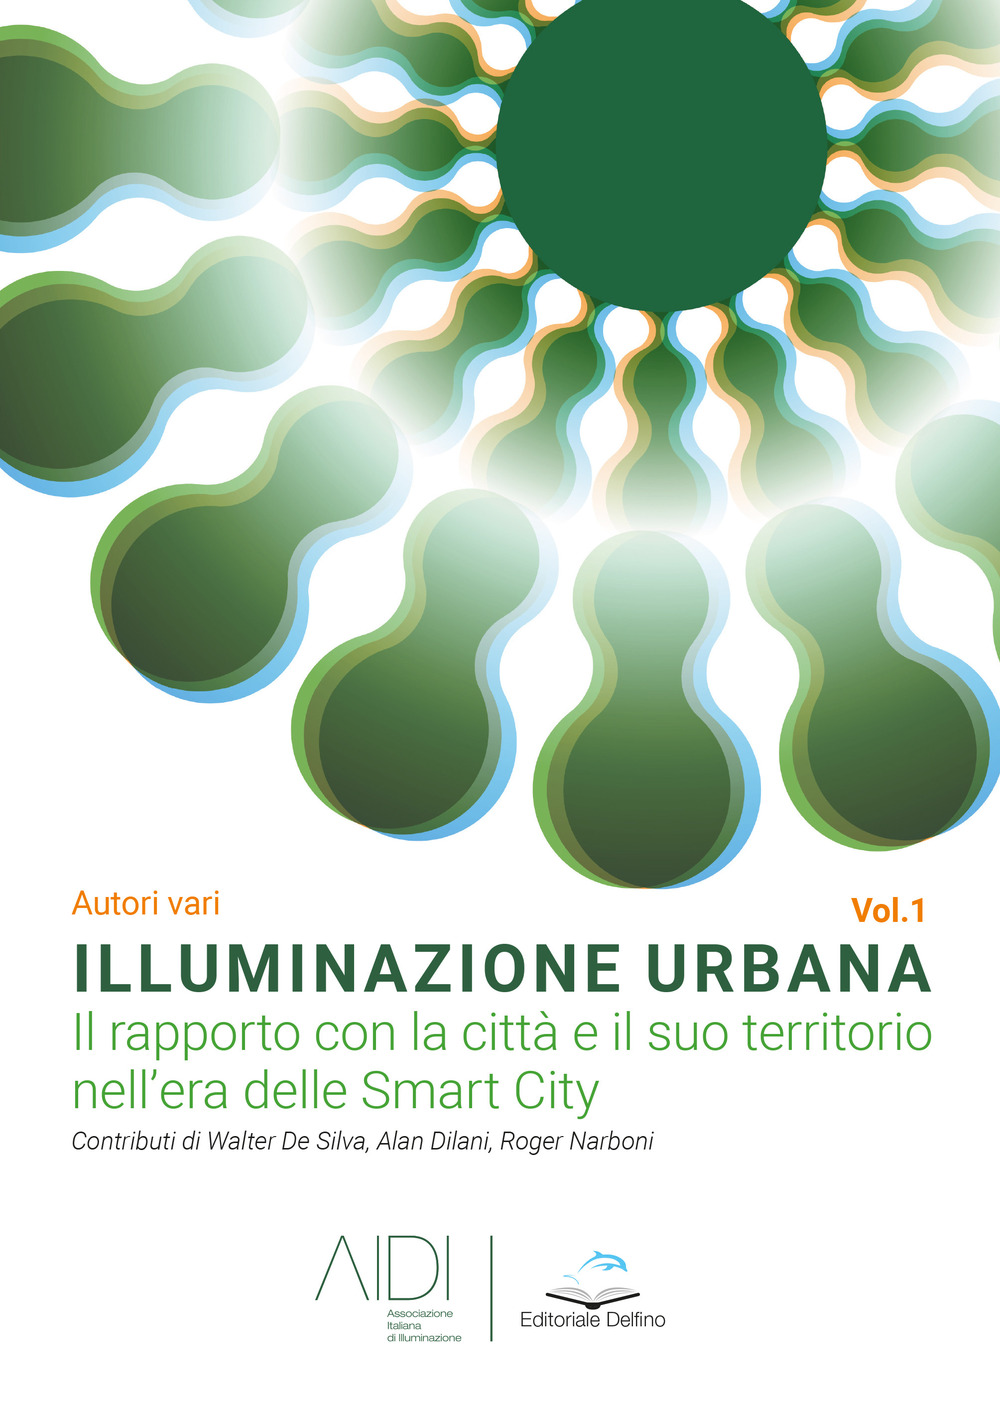 Illuminazione urbana. Vol. 1: Il rapporto con la città e il suo territorio nell'area delle Smart City